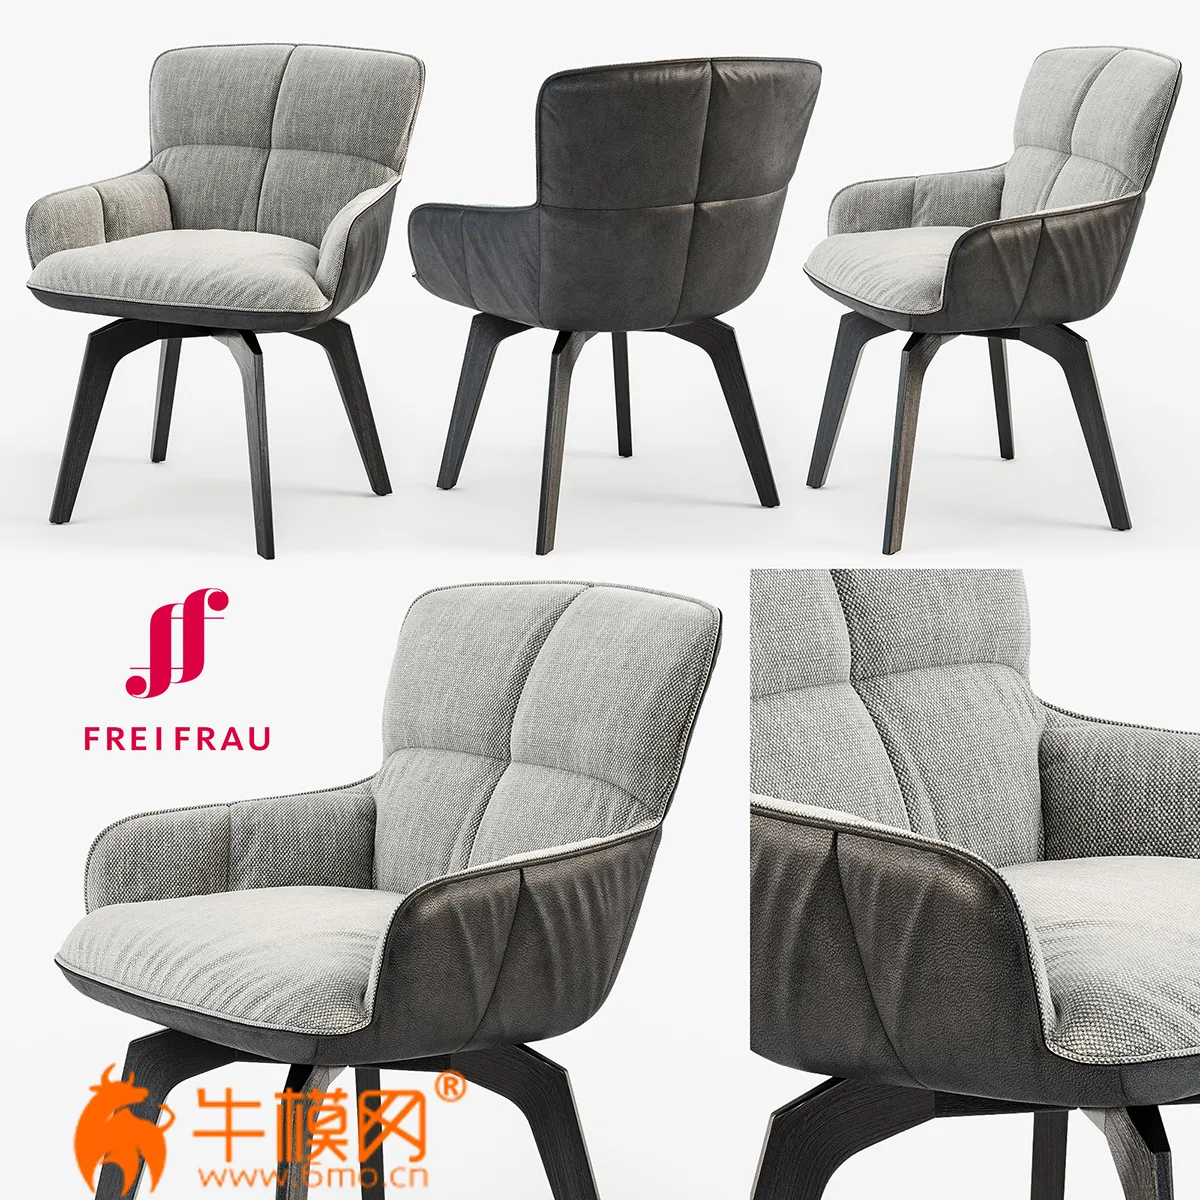 Freifrau Marla armchair low wooden frame (max 2011, 2014, obj) – 3366